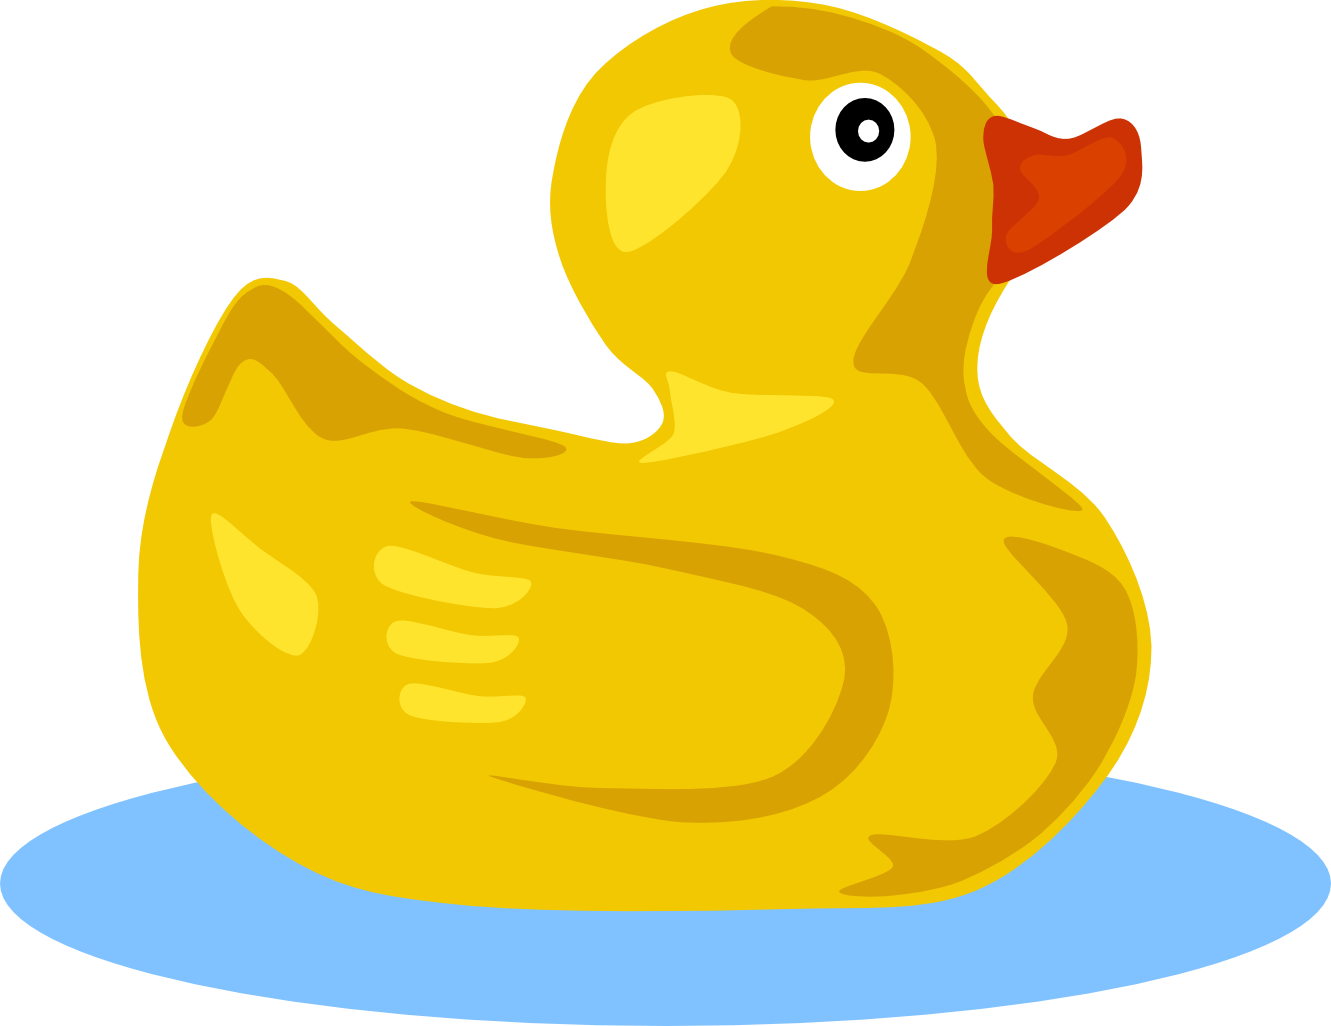 Duckling clipart mummy. Rubber duck clip art